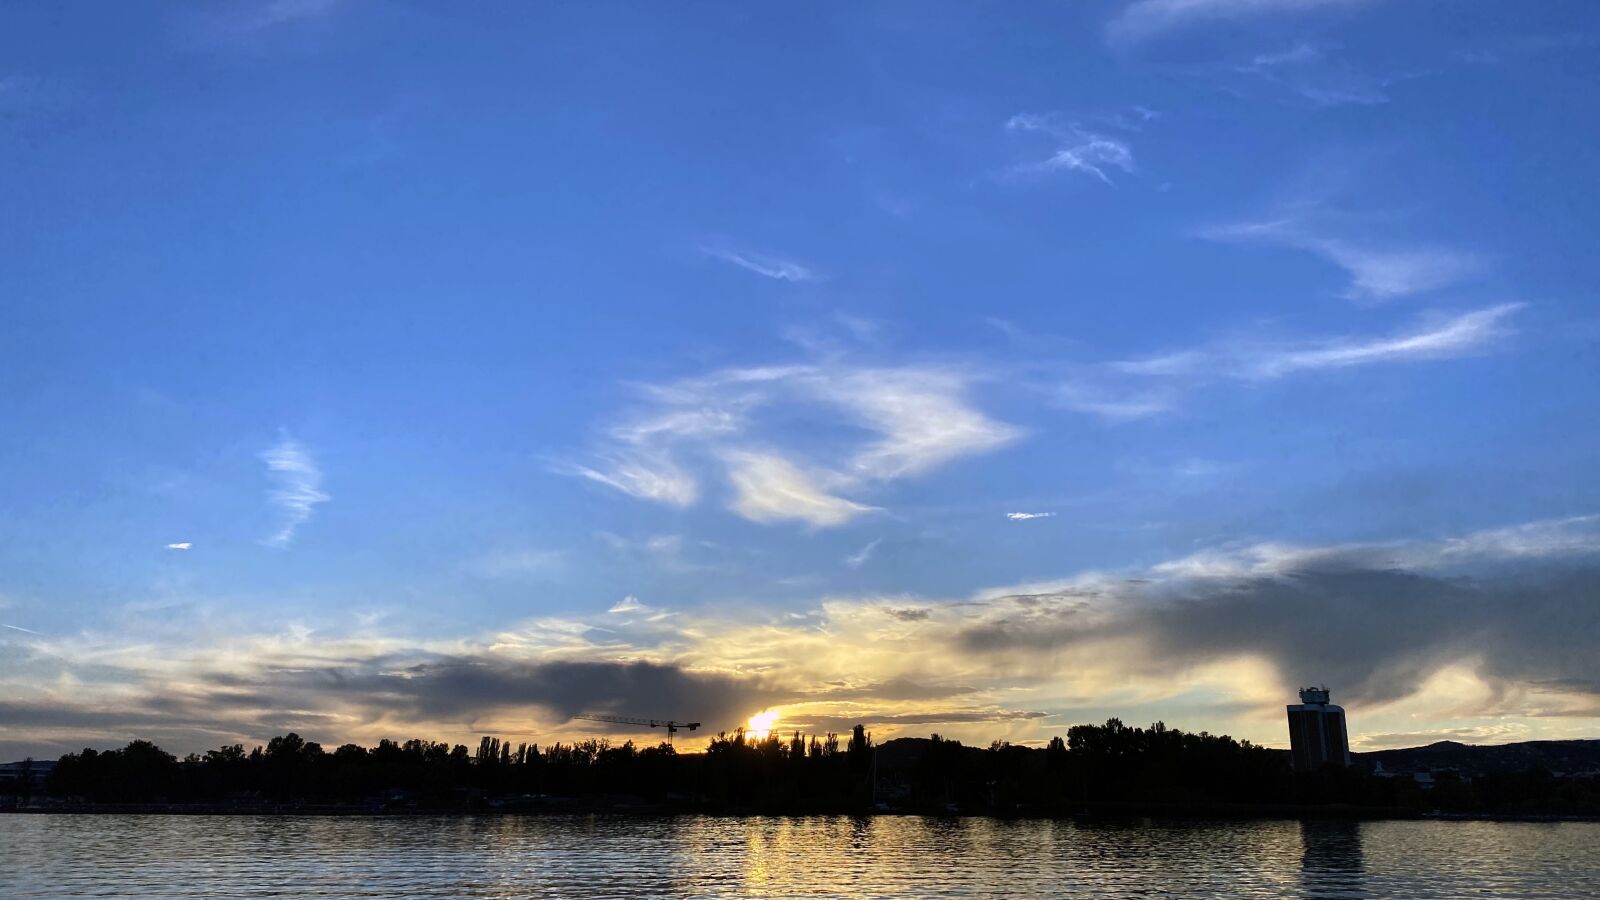 Apple iPhone 11 Pro sample photo. Sunset, lake, landscape photography